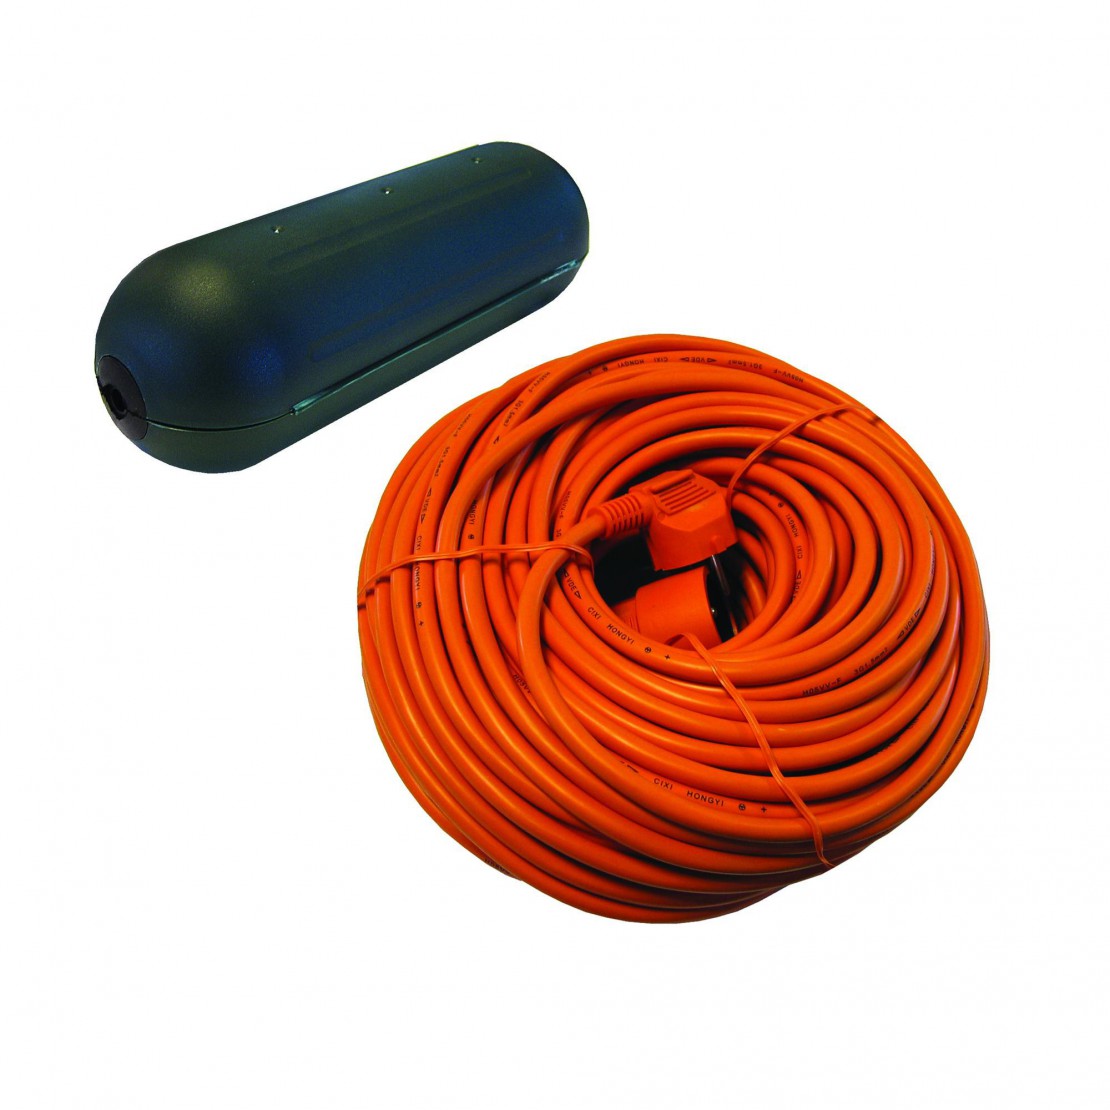 Capa de protecção impermeável para cabo + cabo de extensão laranja - 20 m